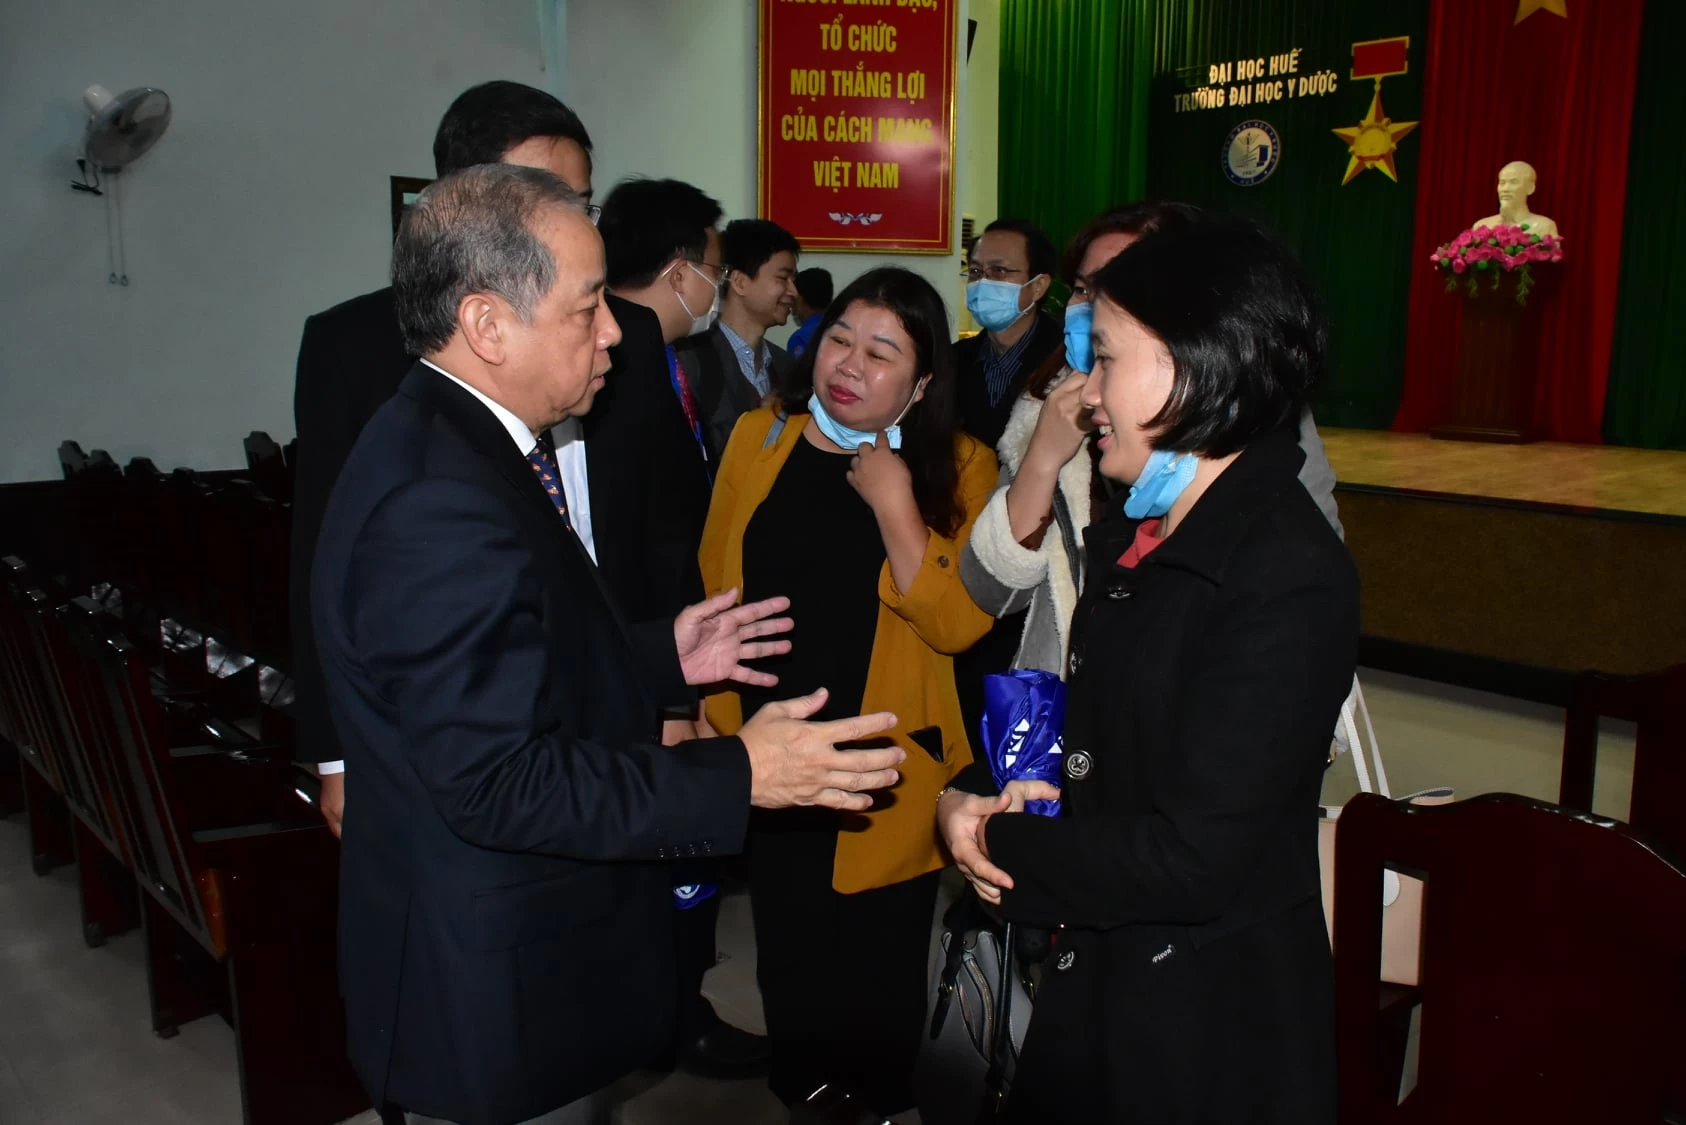 Kết thúc buổi đối thoại, ông Phan Ngọc Thọ vẫn tiếp tục nán lại để trao đổi thân mật, gần gũi với các giảng viên Trường Đại học Y - Dược Huế.